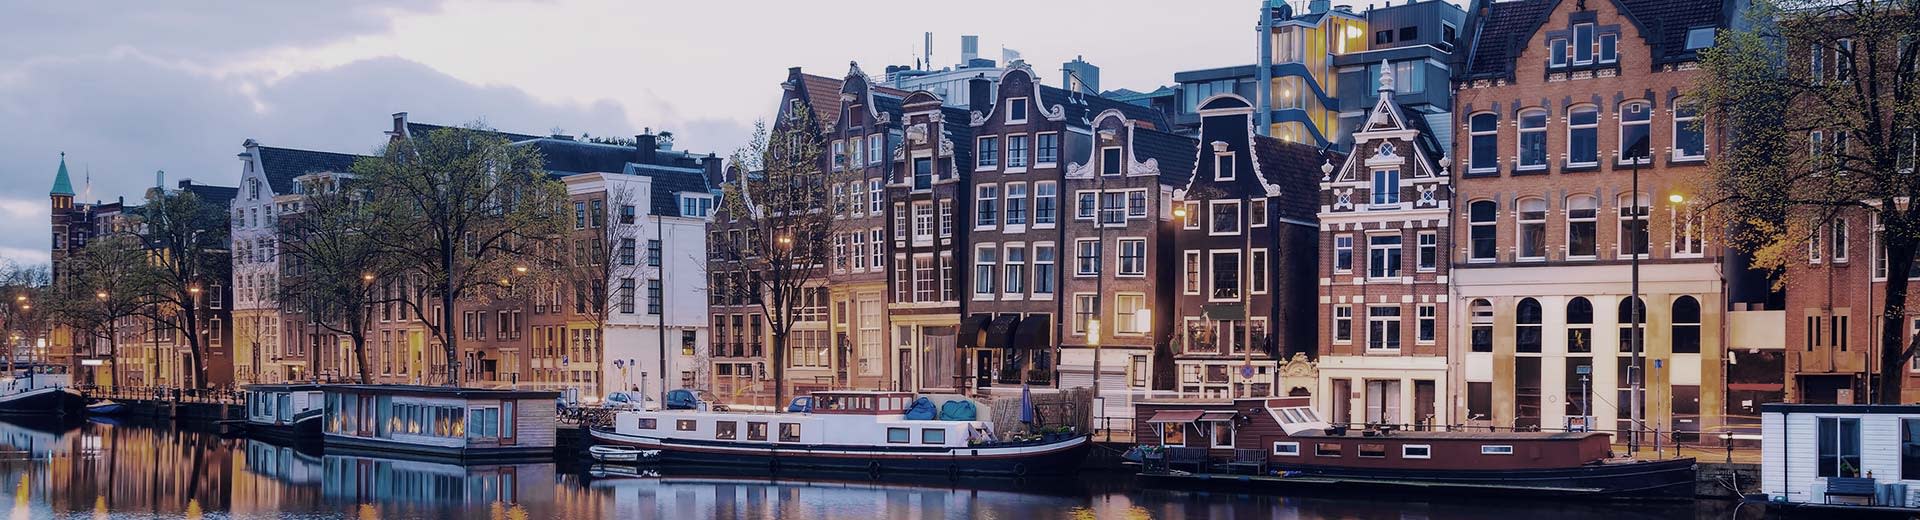 Hausboote parkten neben dem Kanal mit einem Streifen der niederländischen Häuser im Stil.